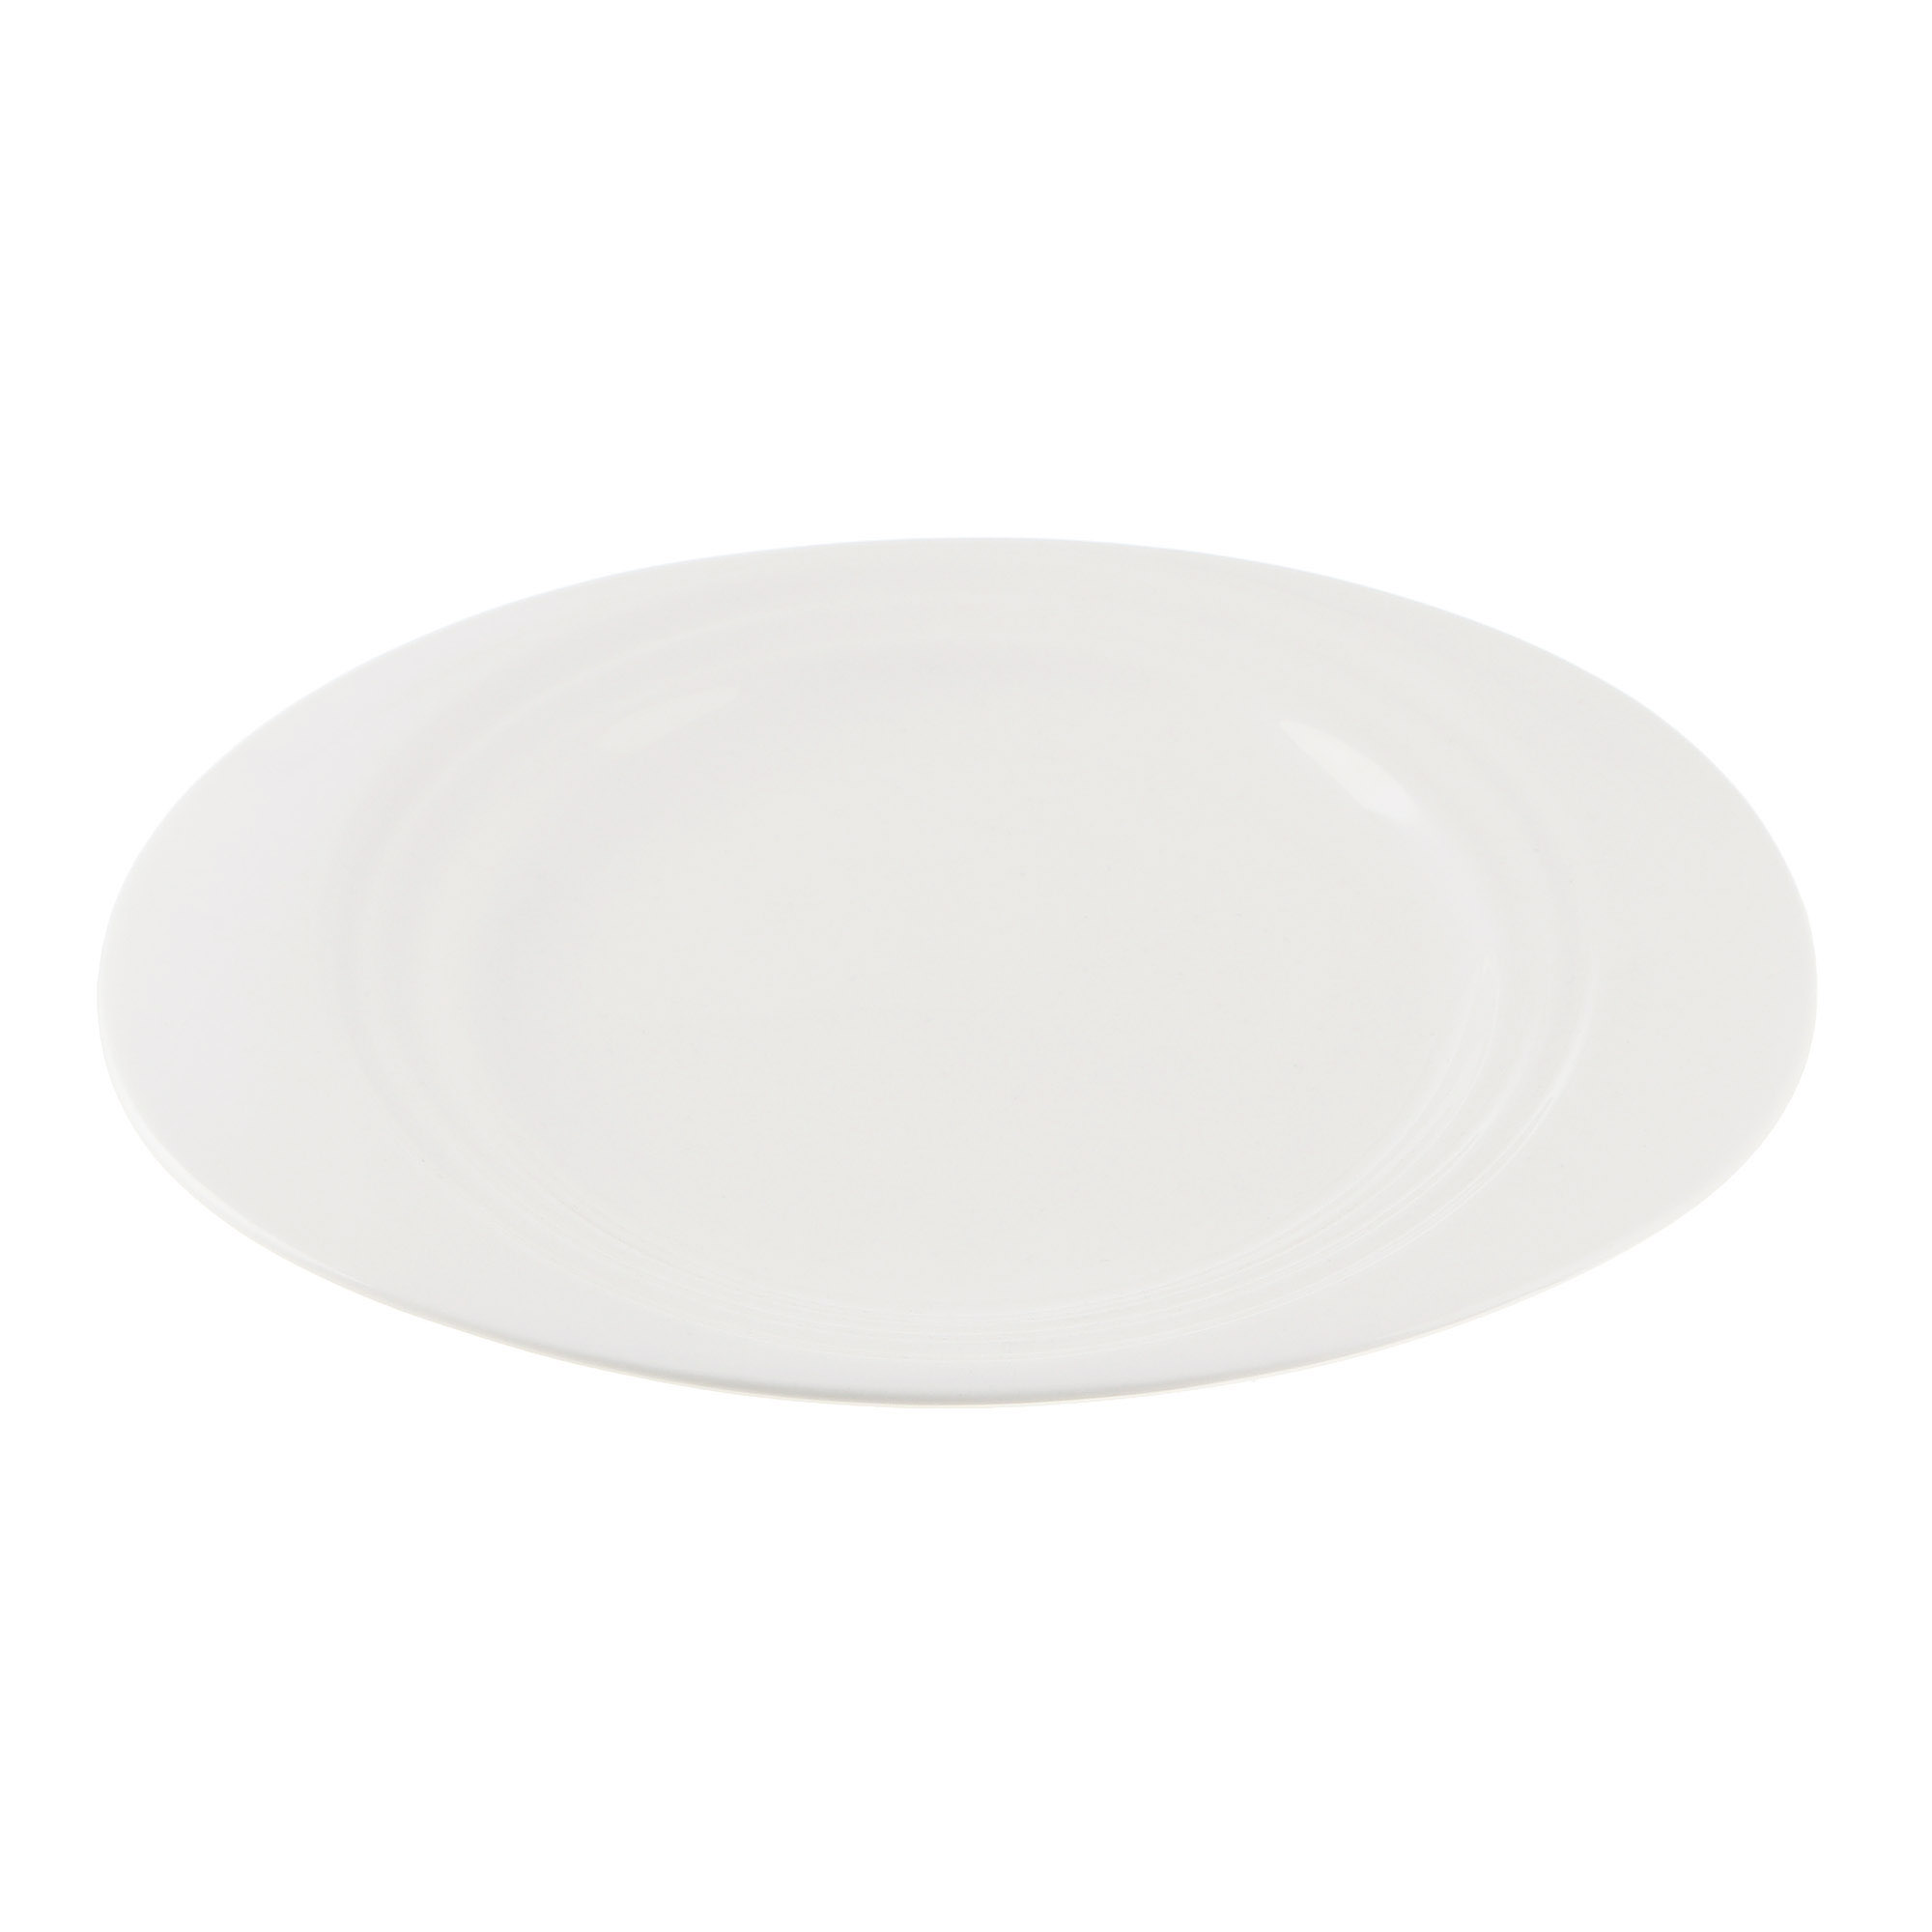 Тарелка Cameo Concentrics фарфор 28,2 см тарелка cameo imperial white d26 см 210 101